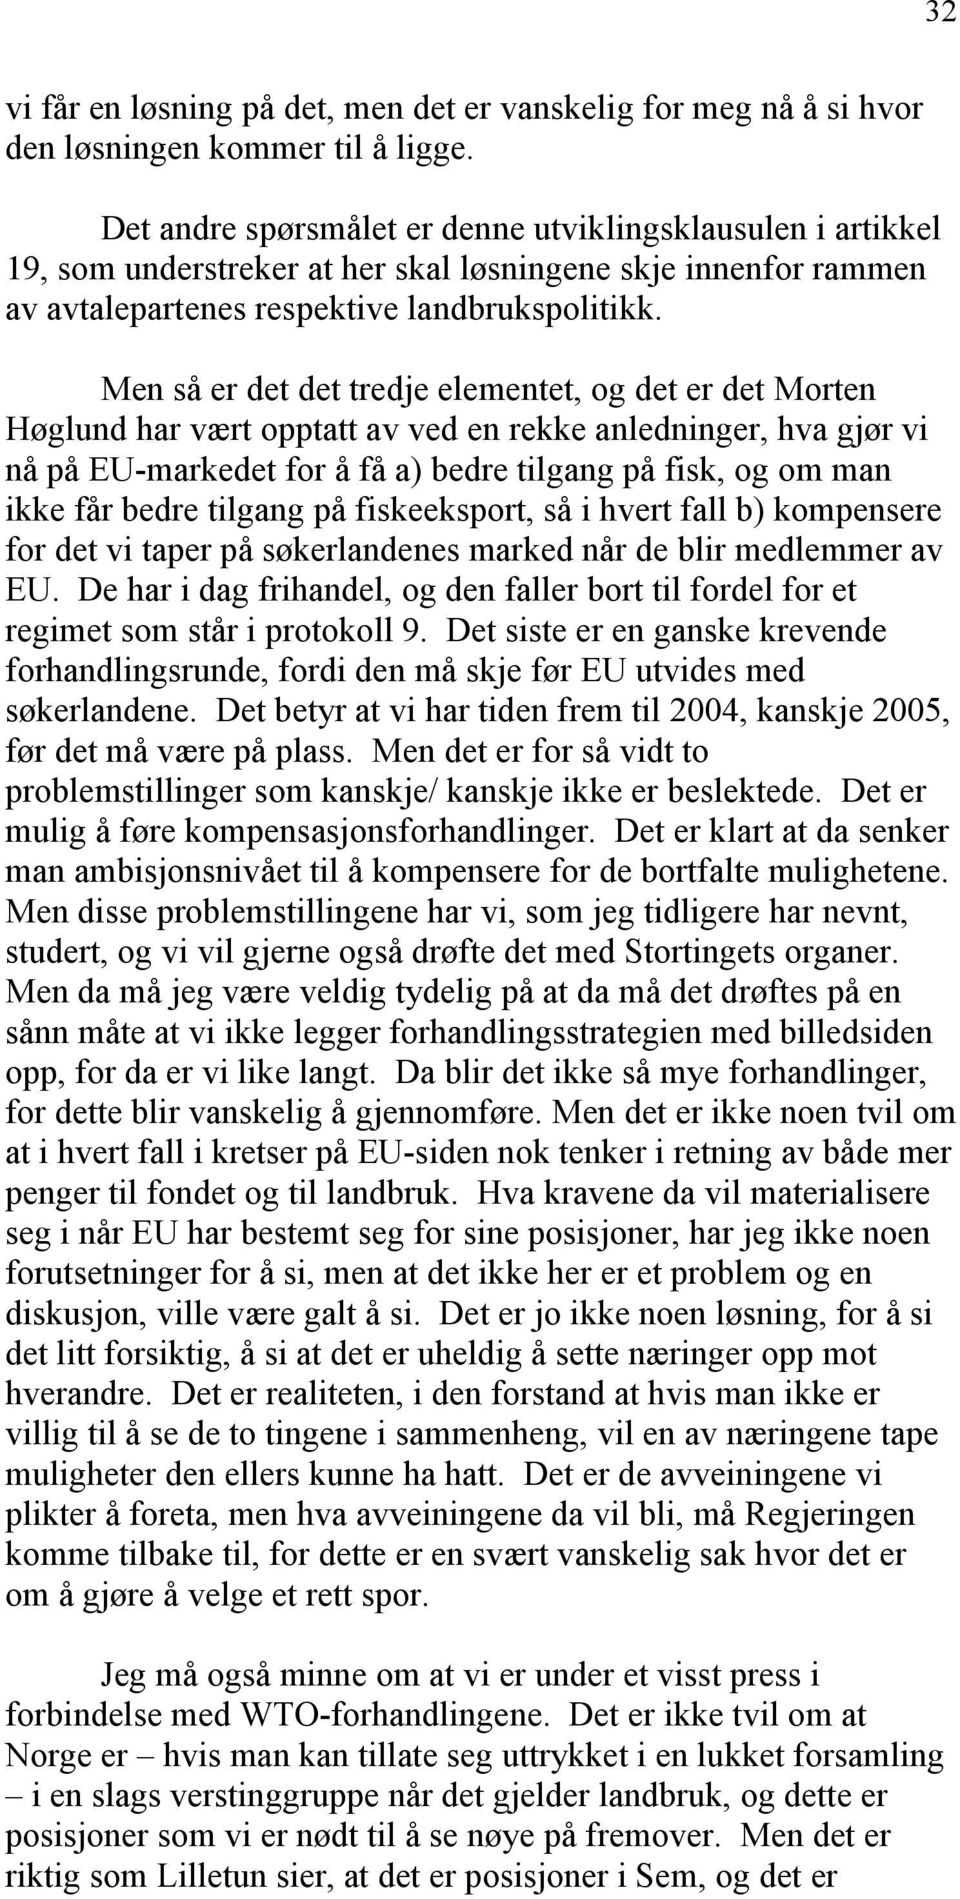 Men så er det det tredje elementet, og det er det Morten Høglund har vært opptatt av ved en rekke anledninger, hva gjør vi nå på EU-markedet for å få a) bedre tilgang på fisk, og om man ikke får